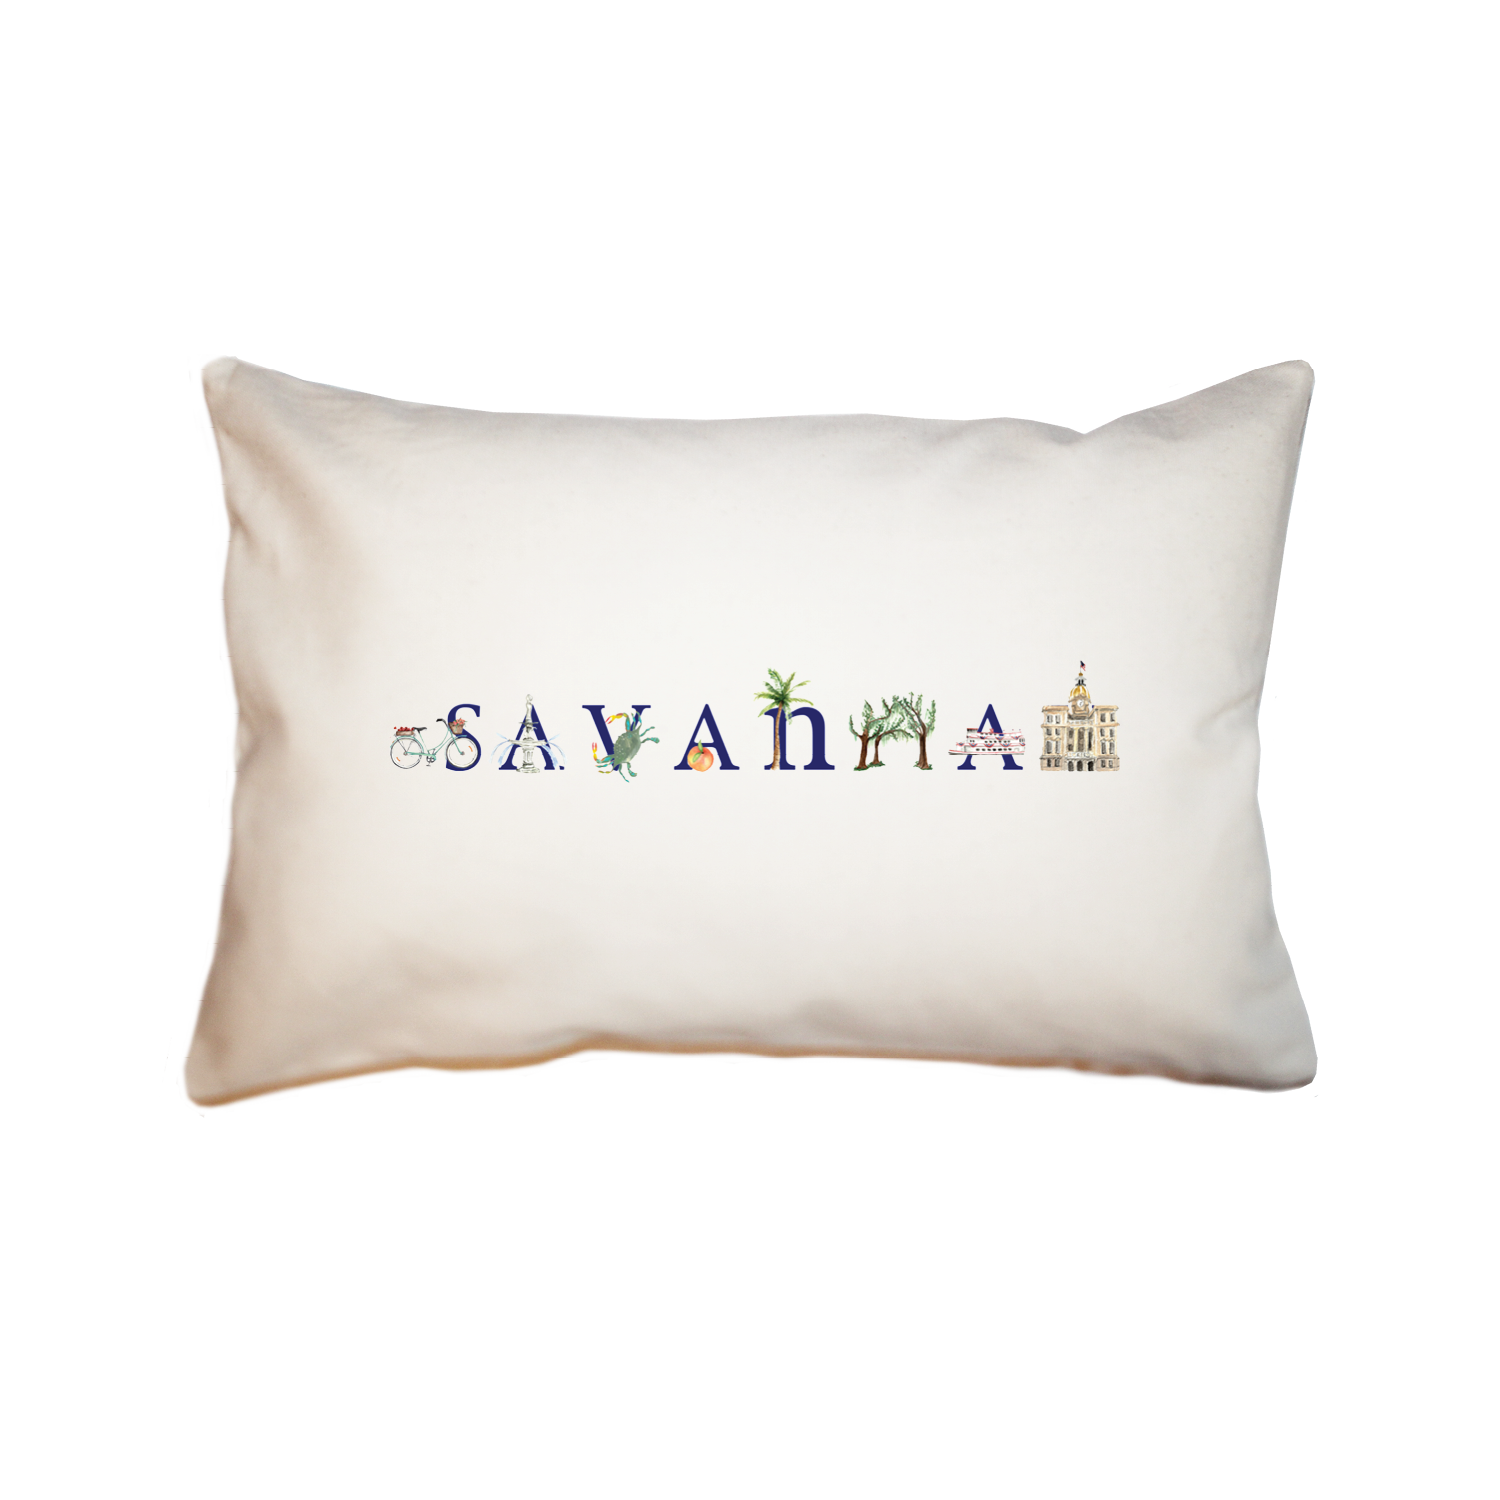 Savannah large rectangle pillow